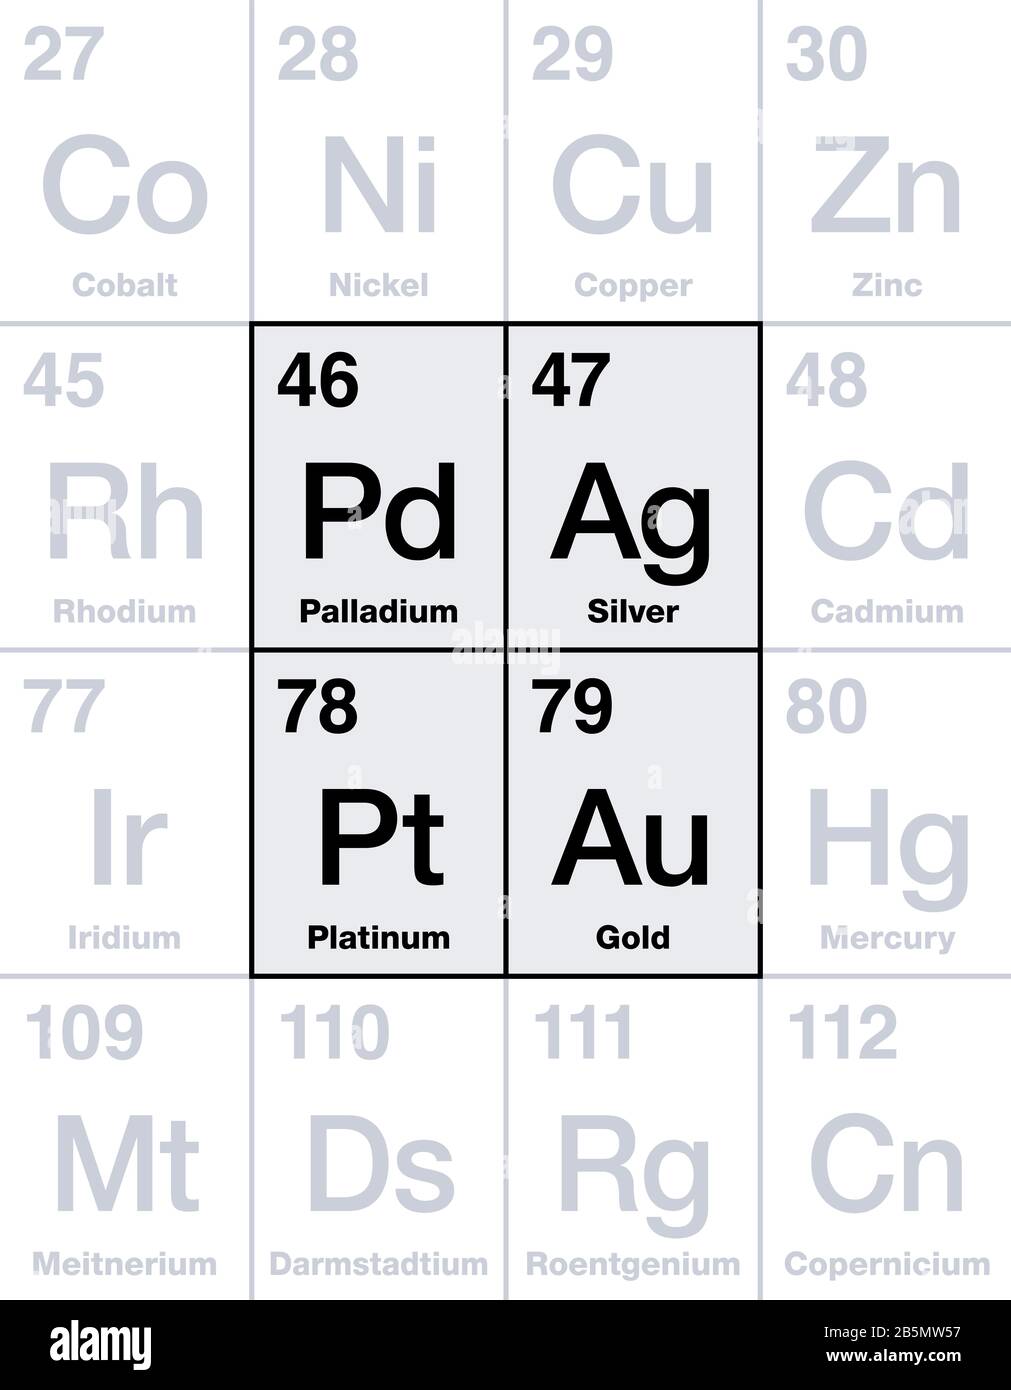 Metales preciosos en tabla periódica. Oro, plata, platino y paladio, elementos químicos de alto valor económico, considerados como una inversión. Foto de stock